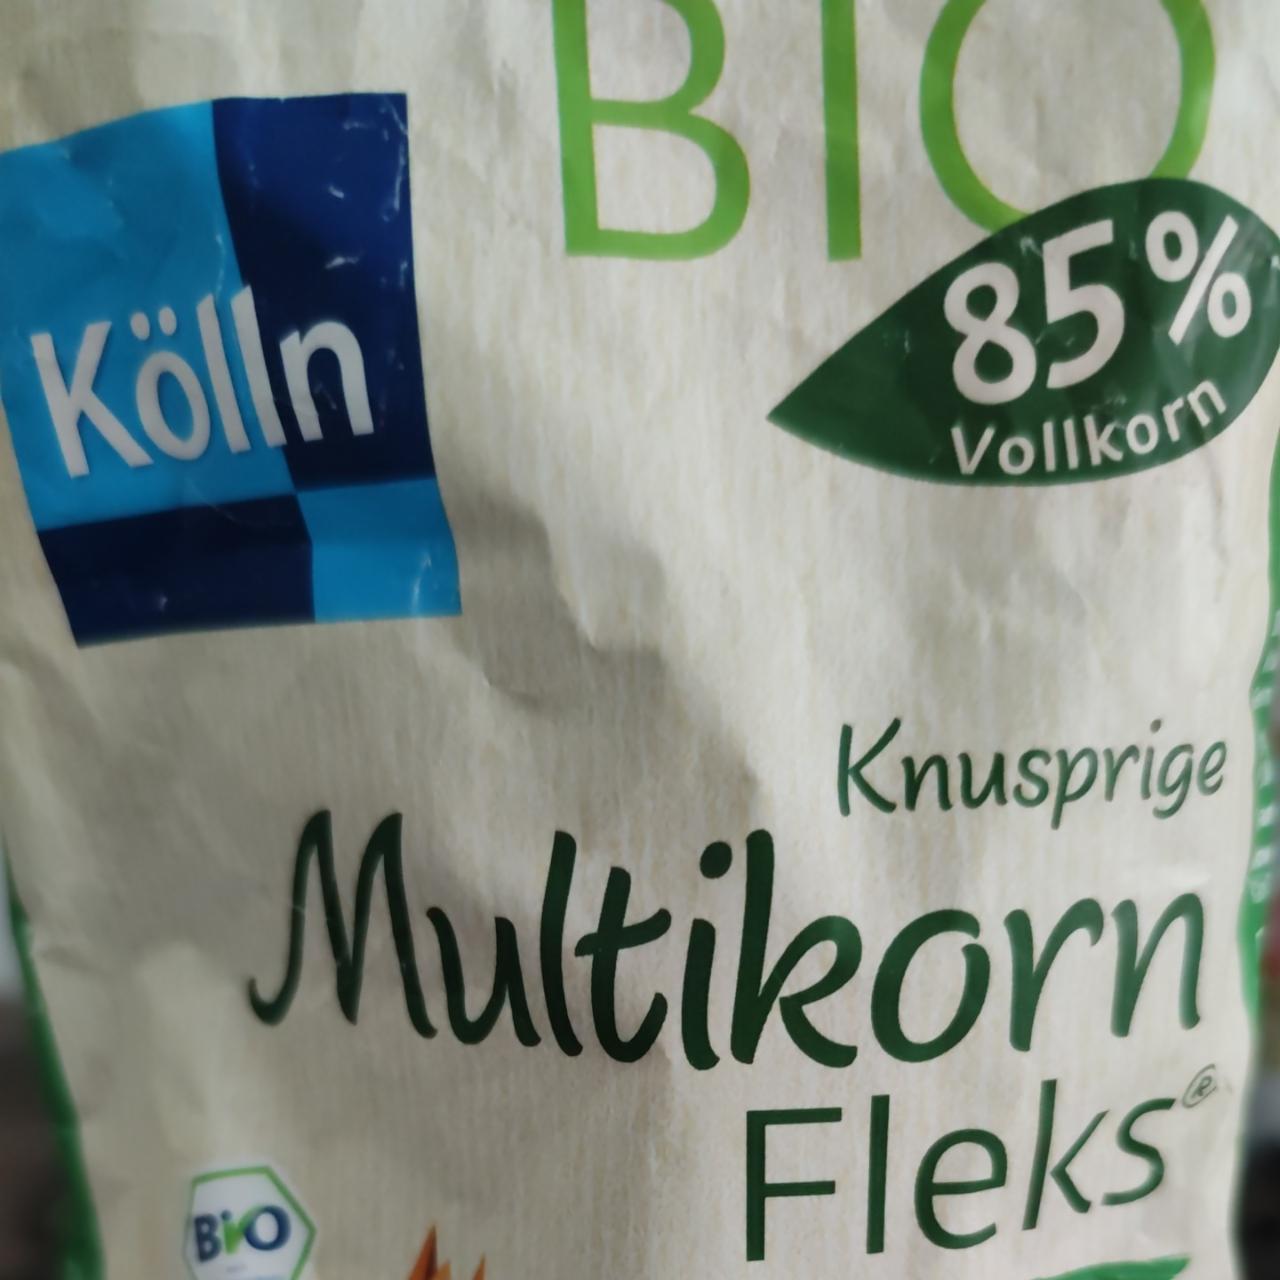 Fotografie - Bio Multikorn Fleks Klassik 85% Vollkorn Kölln